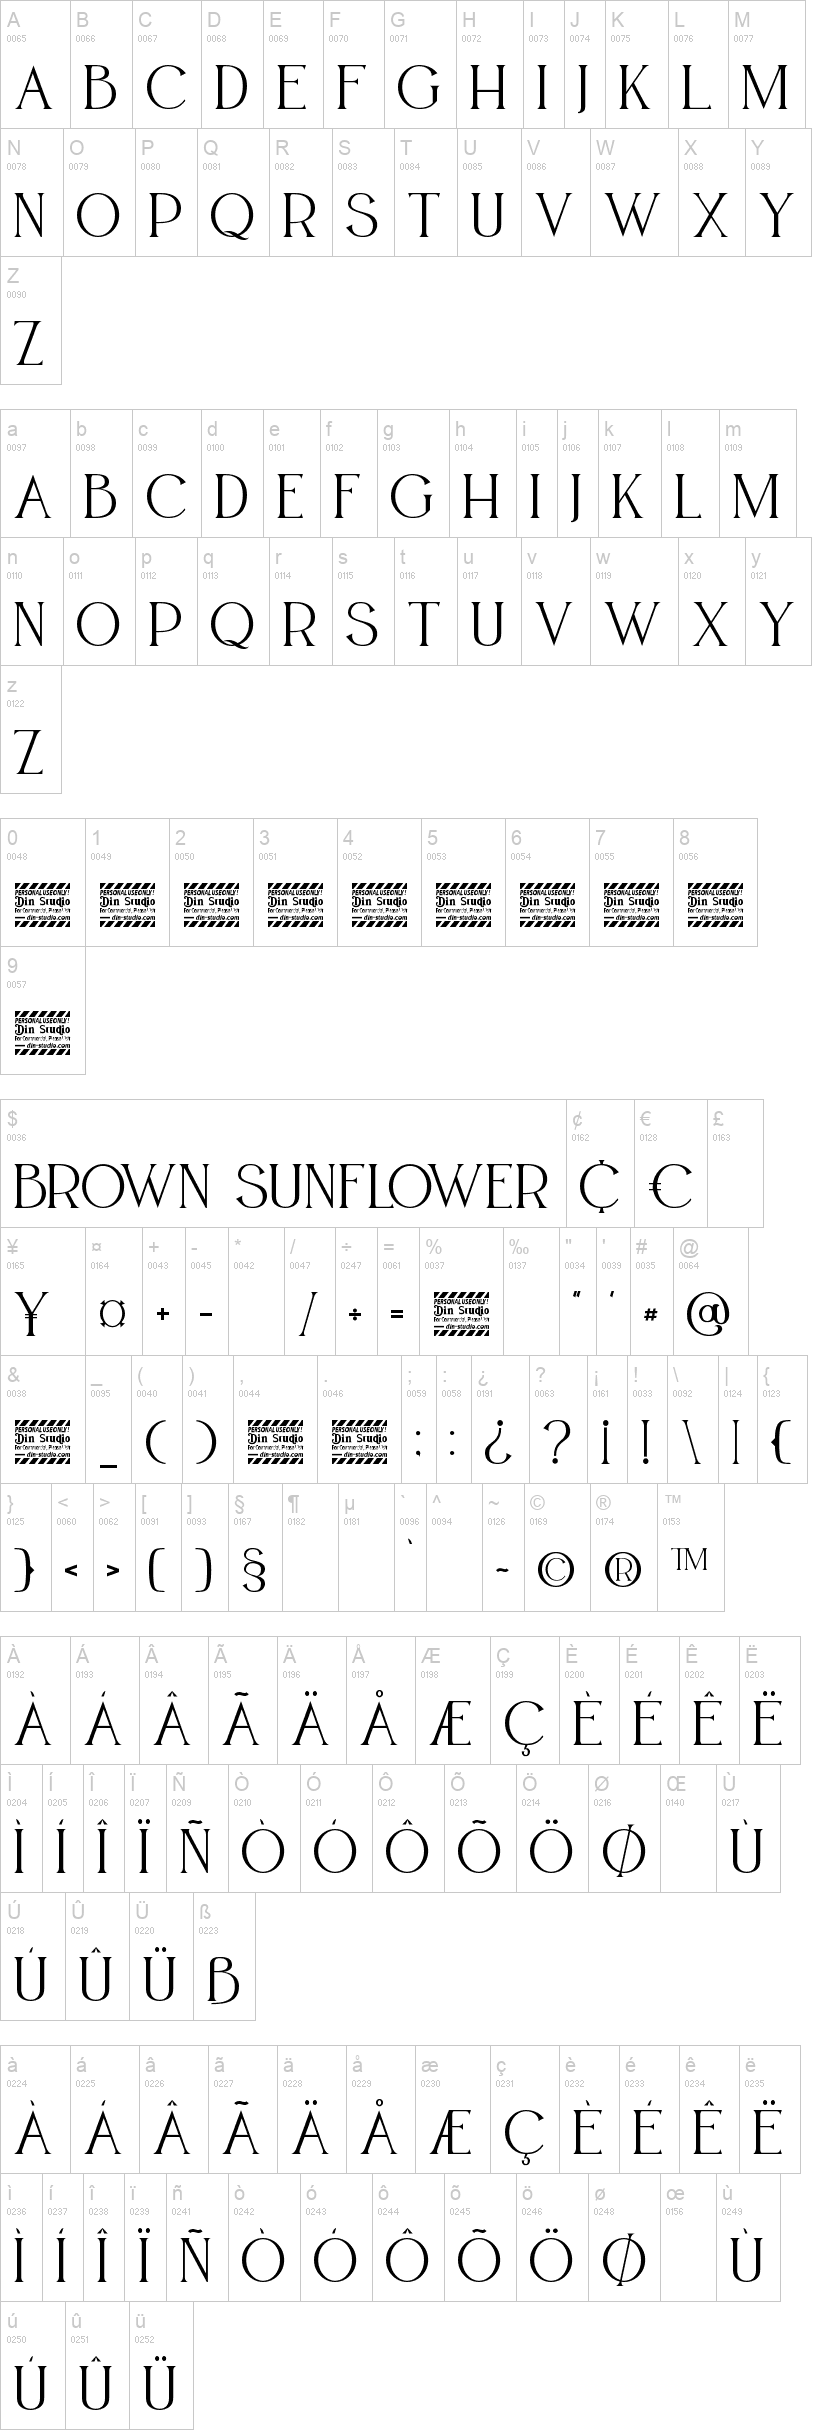 Brown Sunflower Serif